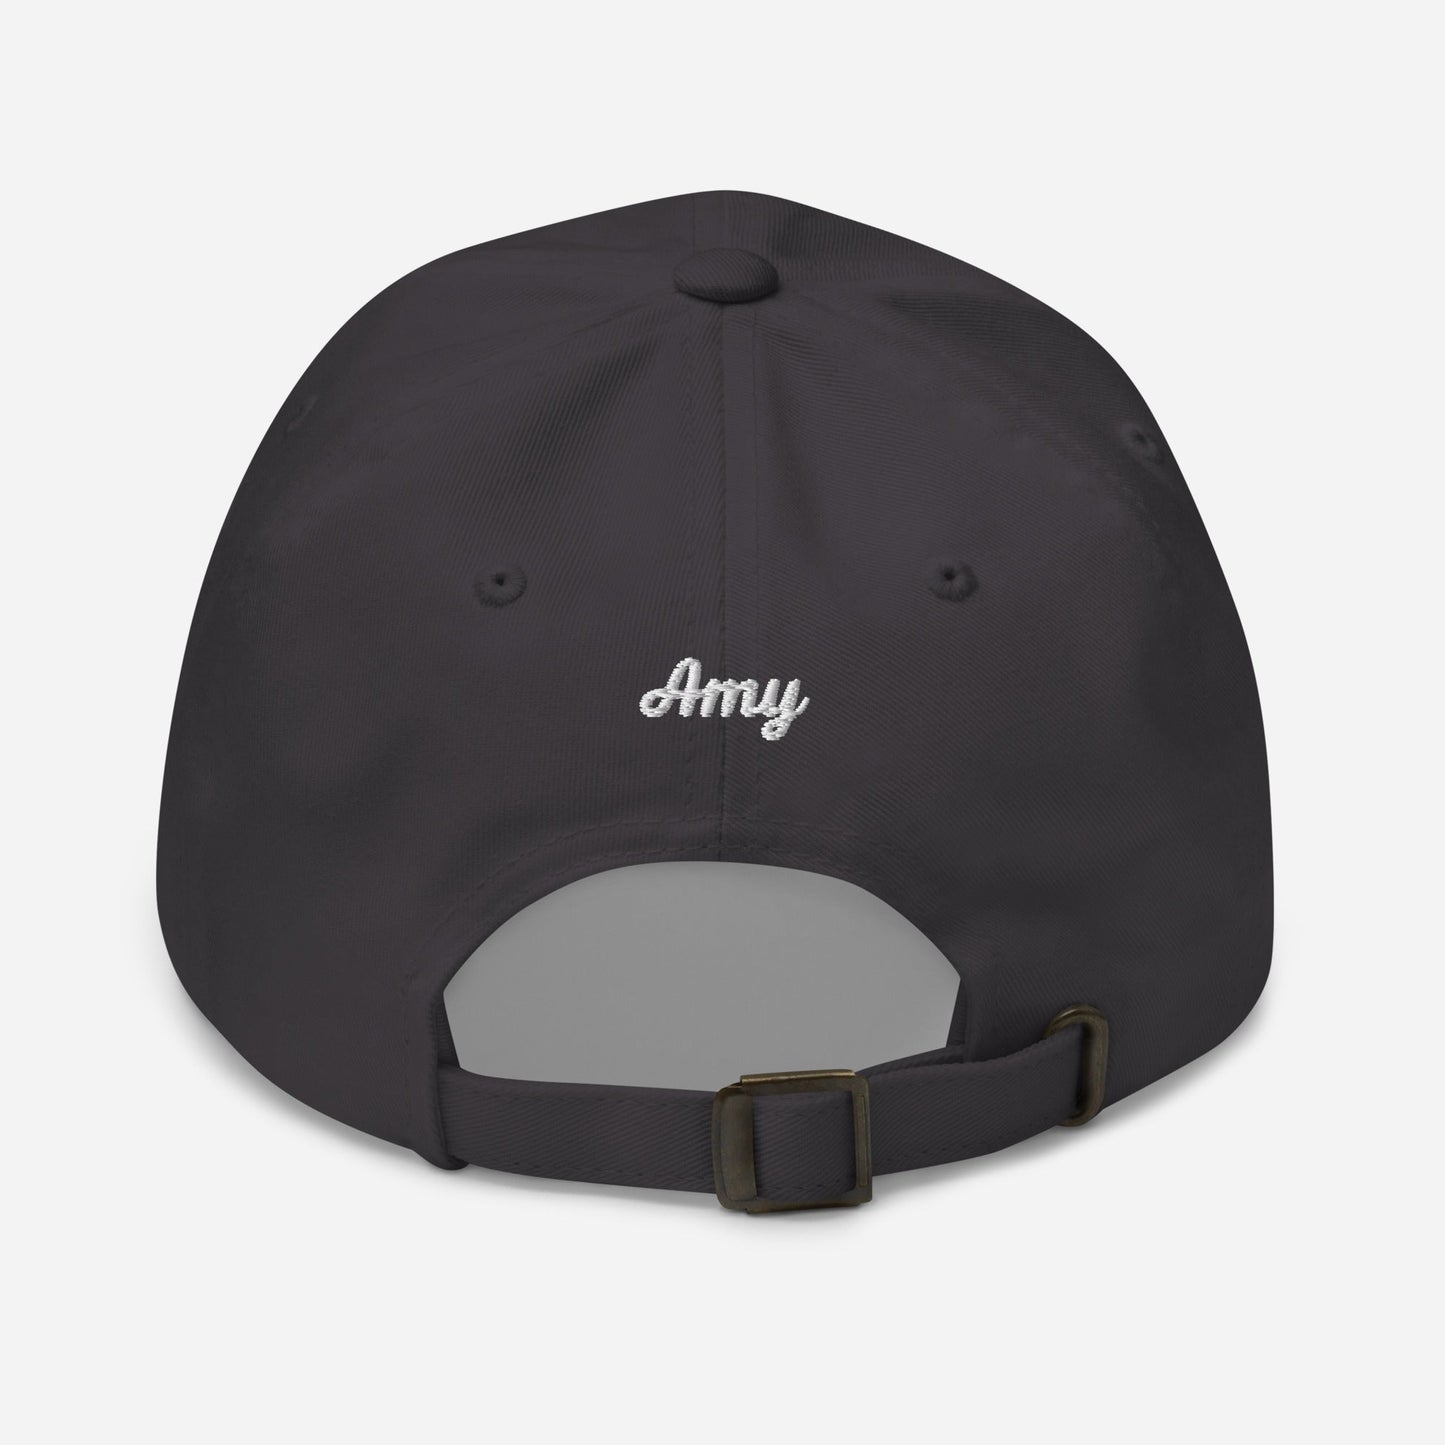 Amiable Baseball Cap (dark colors) - Equiclient Apparel